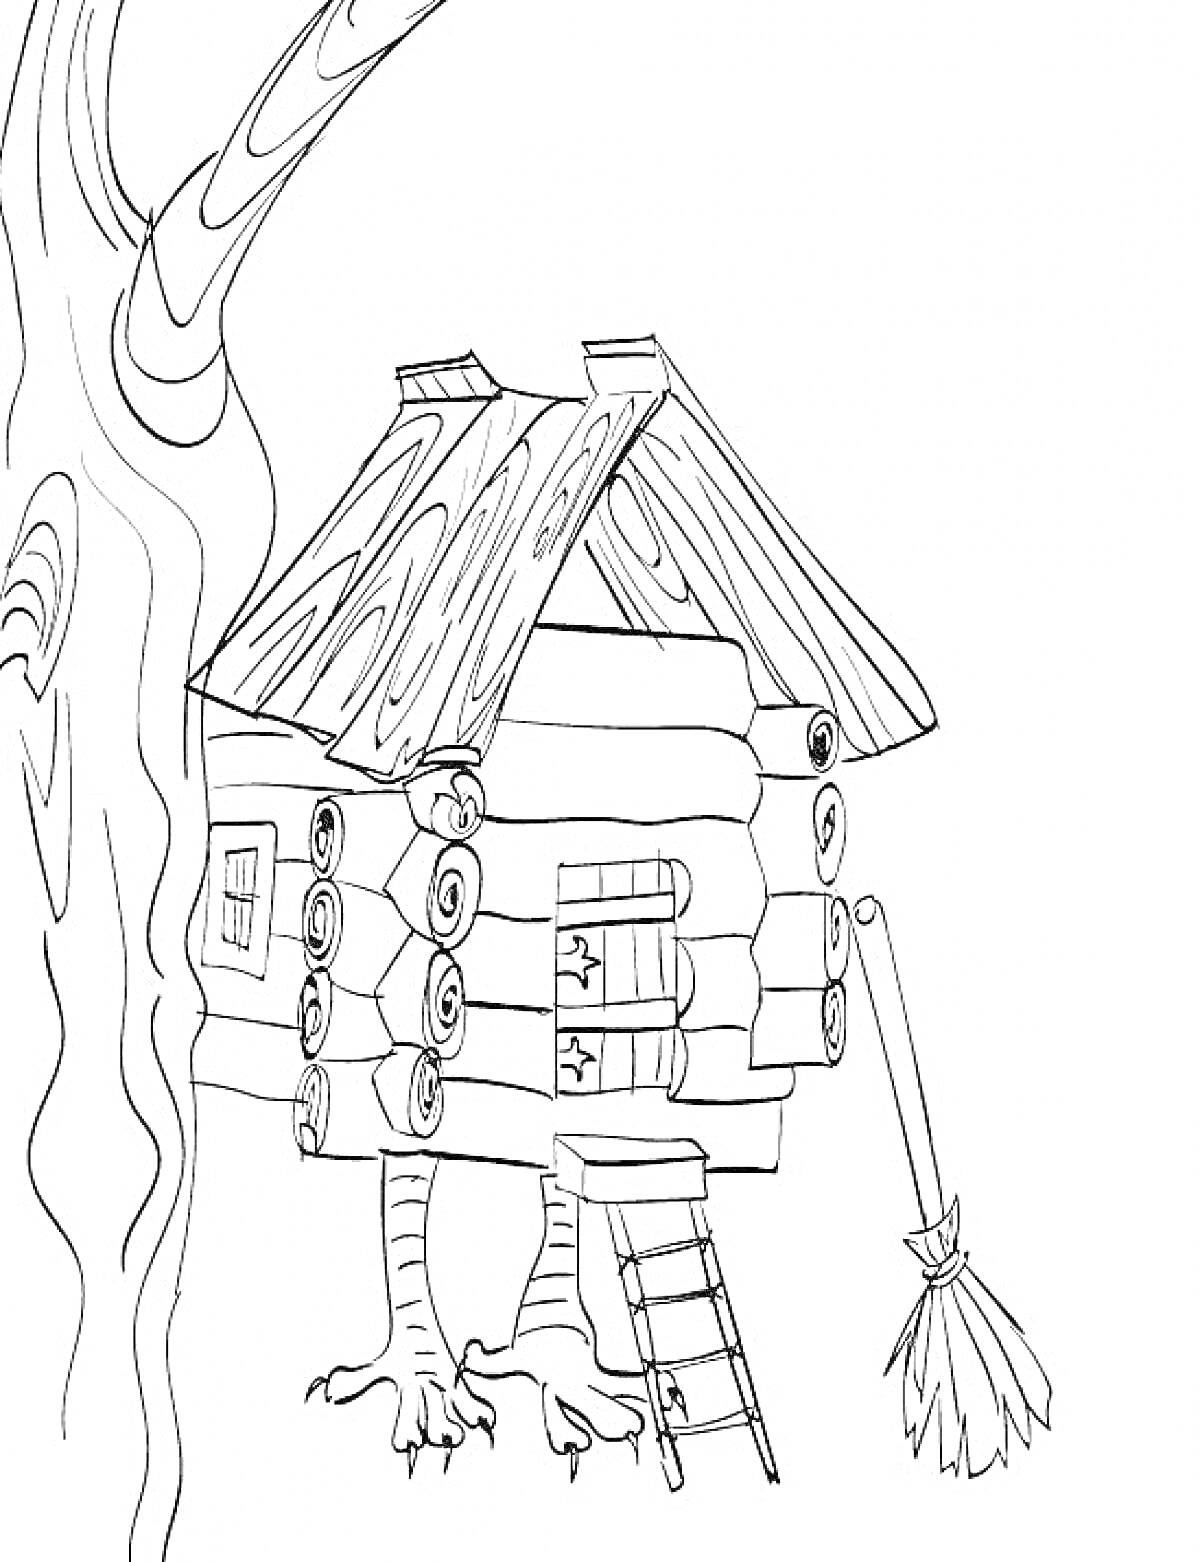 Раскраска Избушка на курьих ножках с лестницей, деревом и метлой